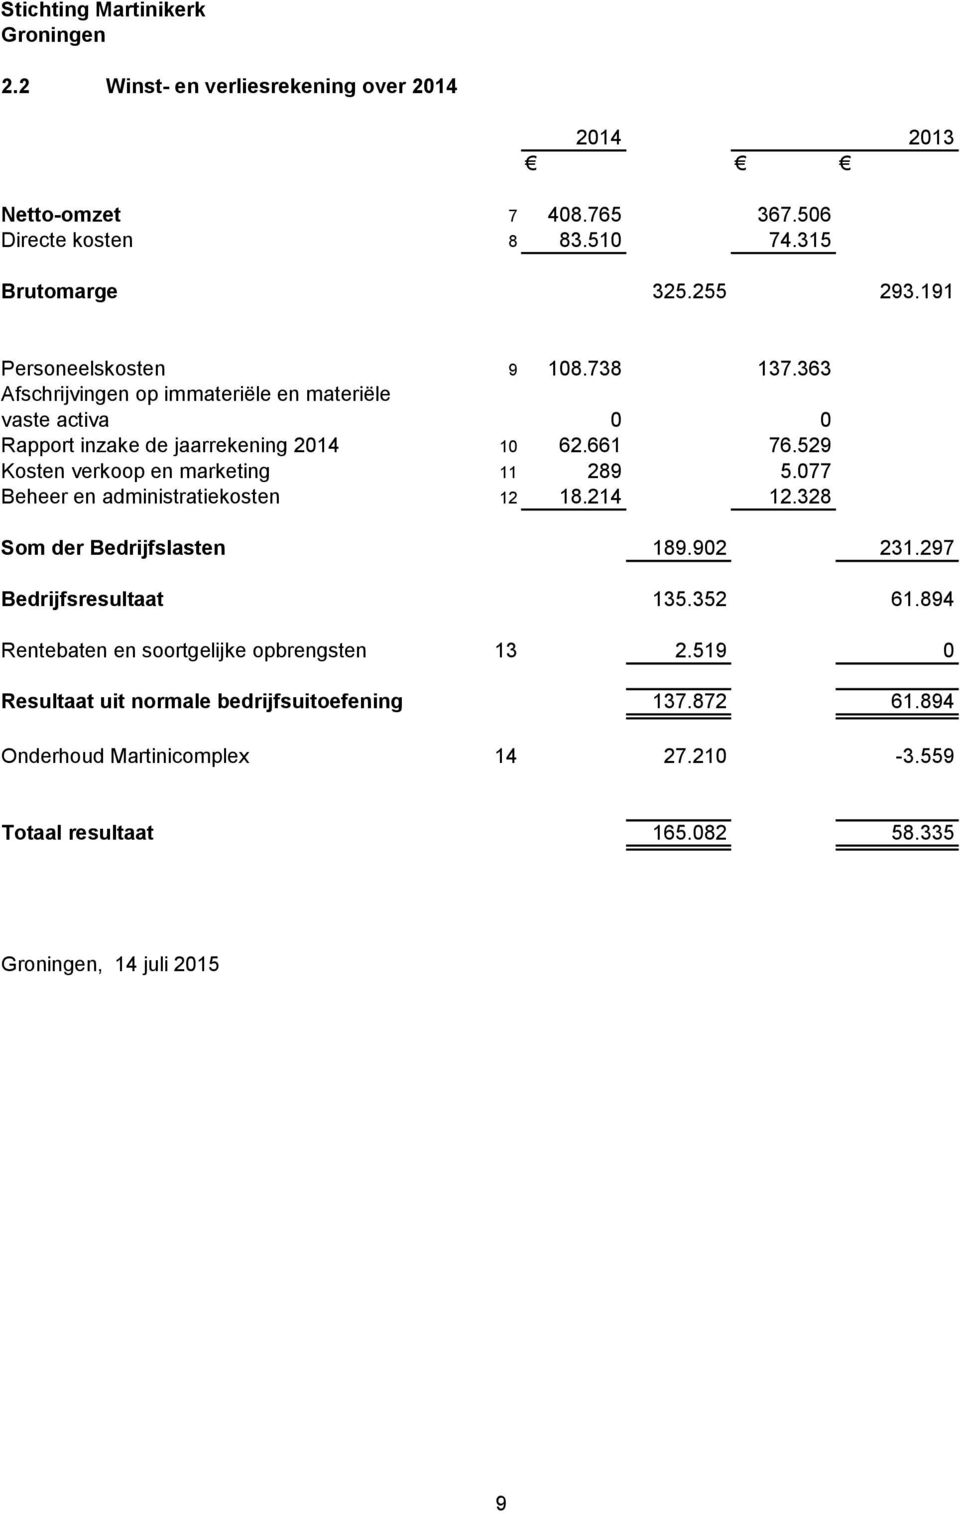 529 Kosten verkoop en marketing 11 289 5.077 Beheer en administratiekosten 12 18.214 12.328 Som der Bedrijfslasten 189.902 231.